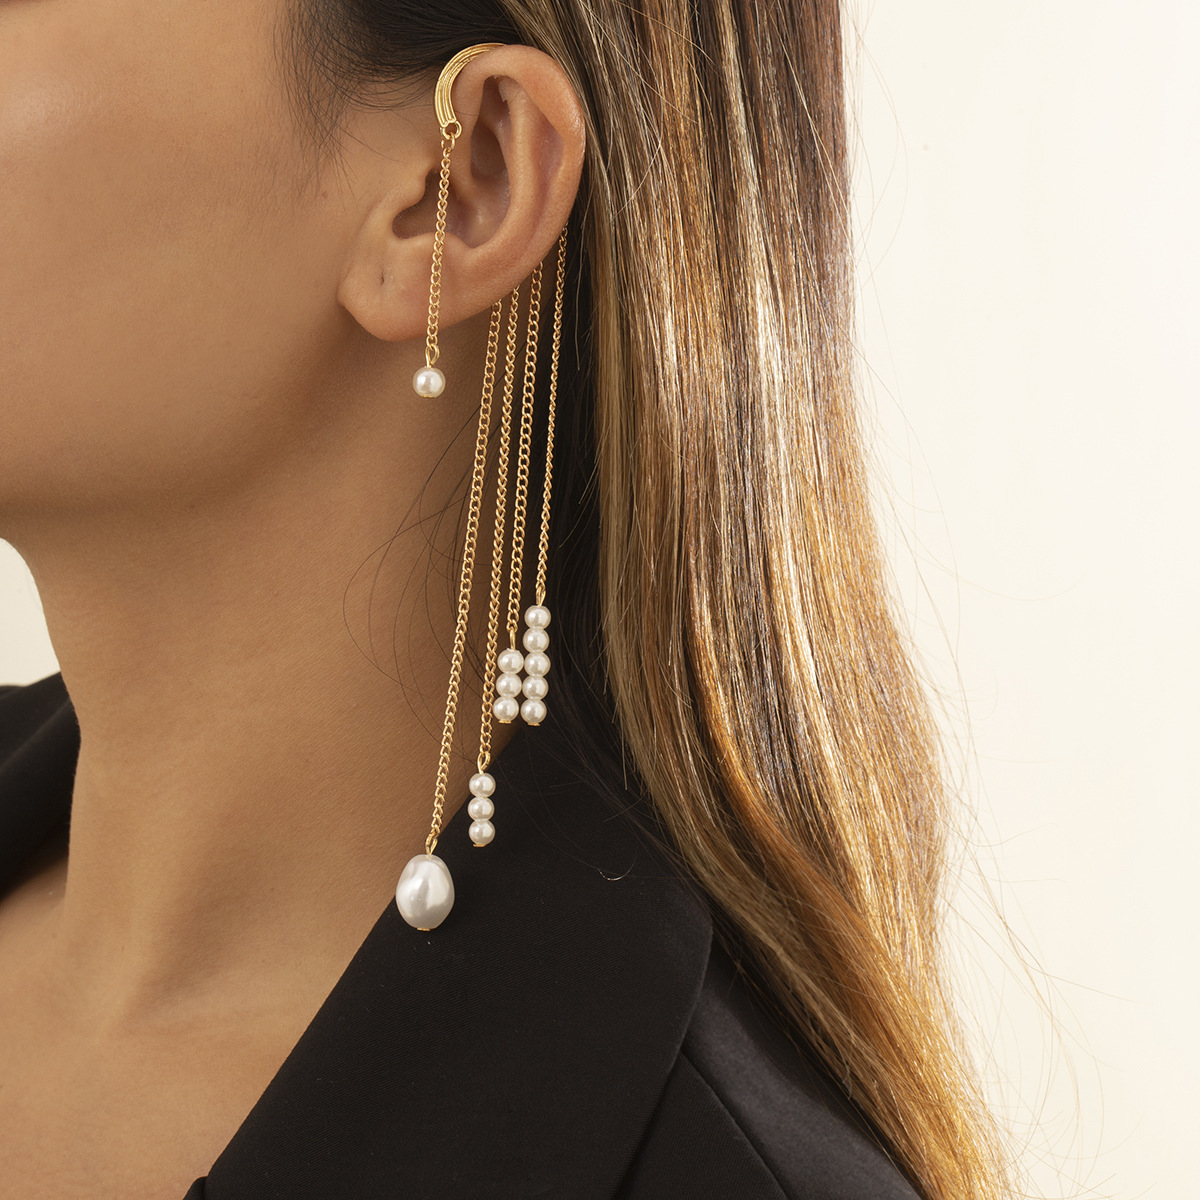 Amerikanische Quaste Nachahmung Perlen mehrschichtige Ohrringe weiblich Grohandelpicture2